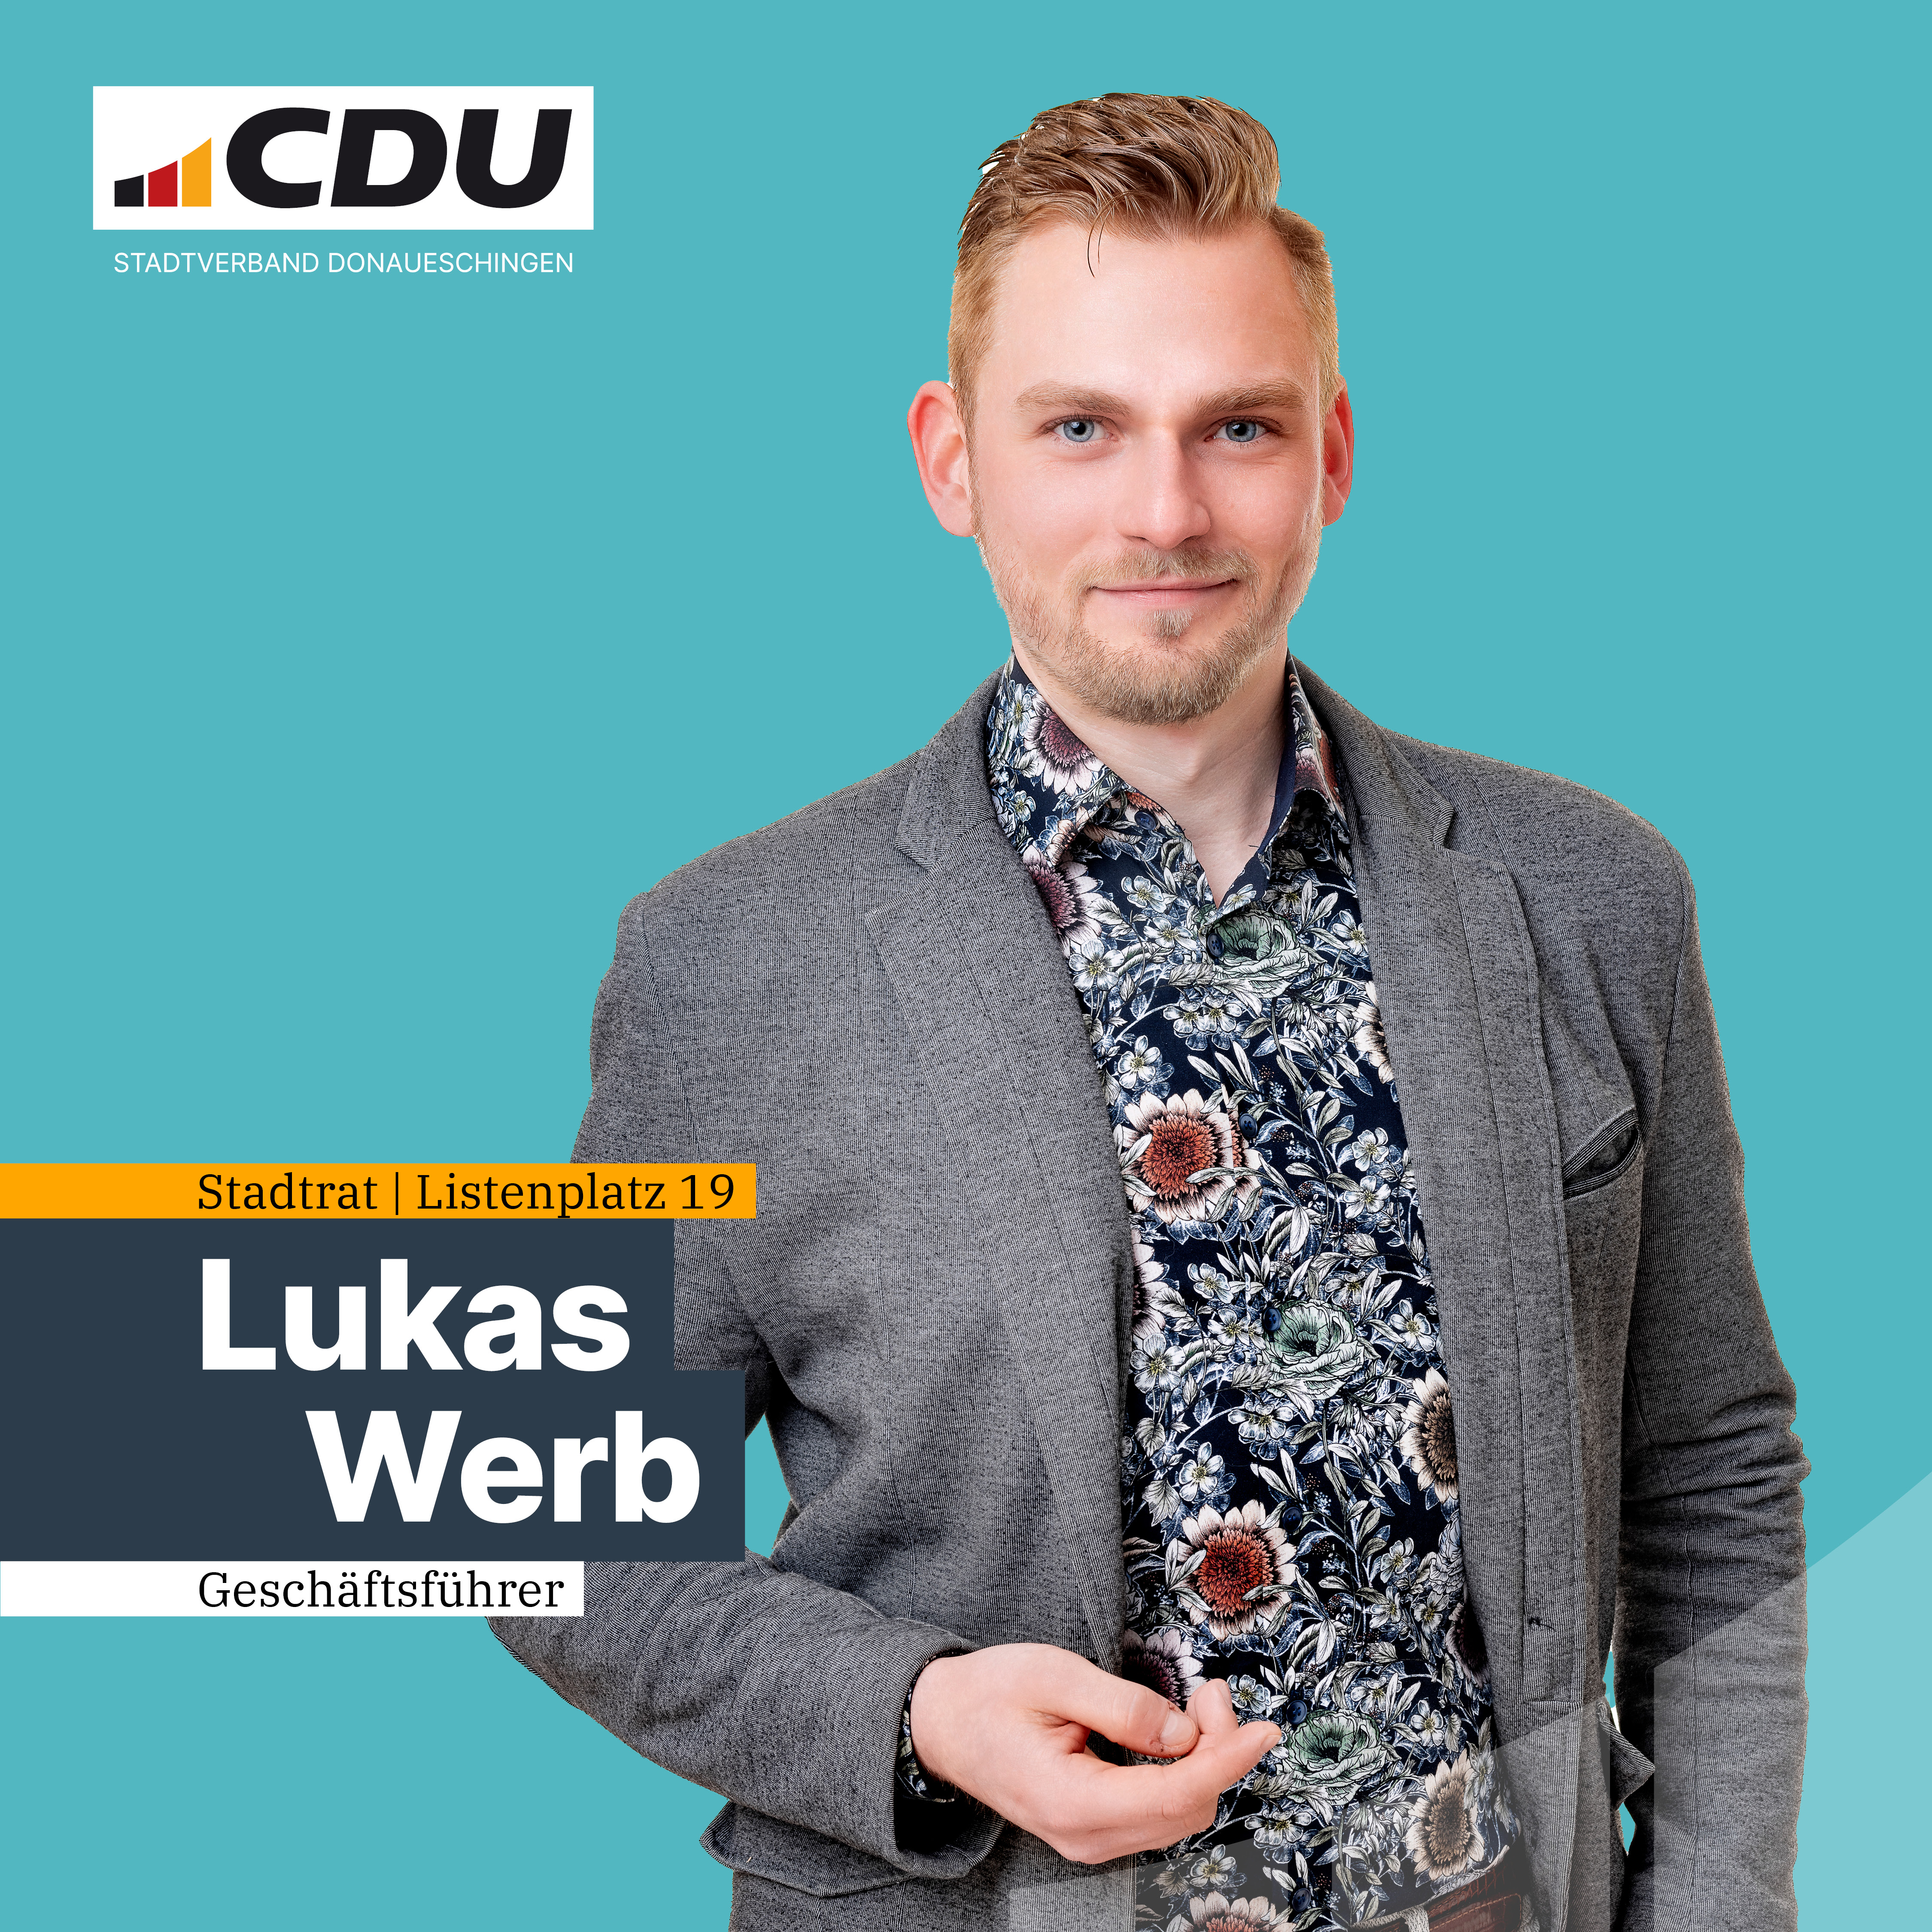  Lukas Werb